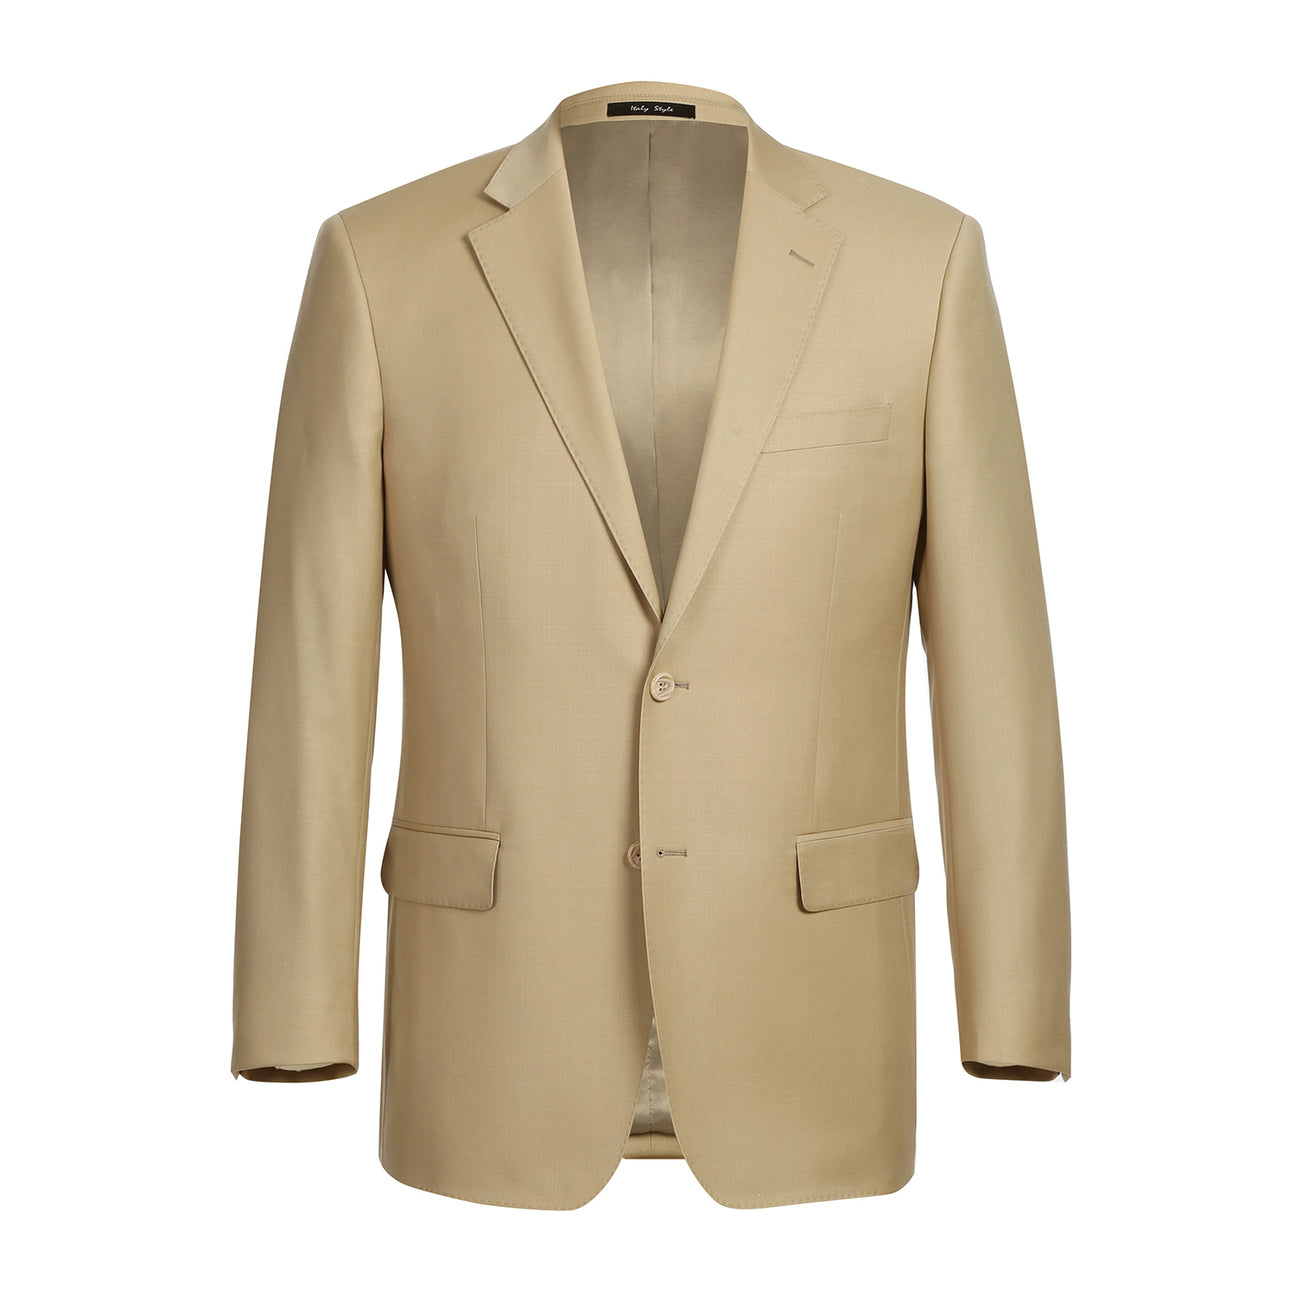 RENOIR Tan 2-Piece Classic Fit Notch Lapel Wool Suit 508-4